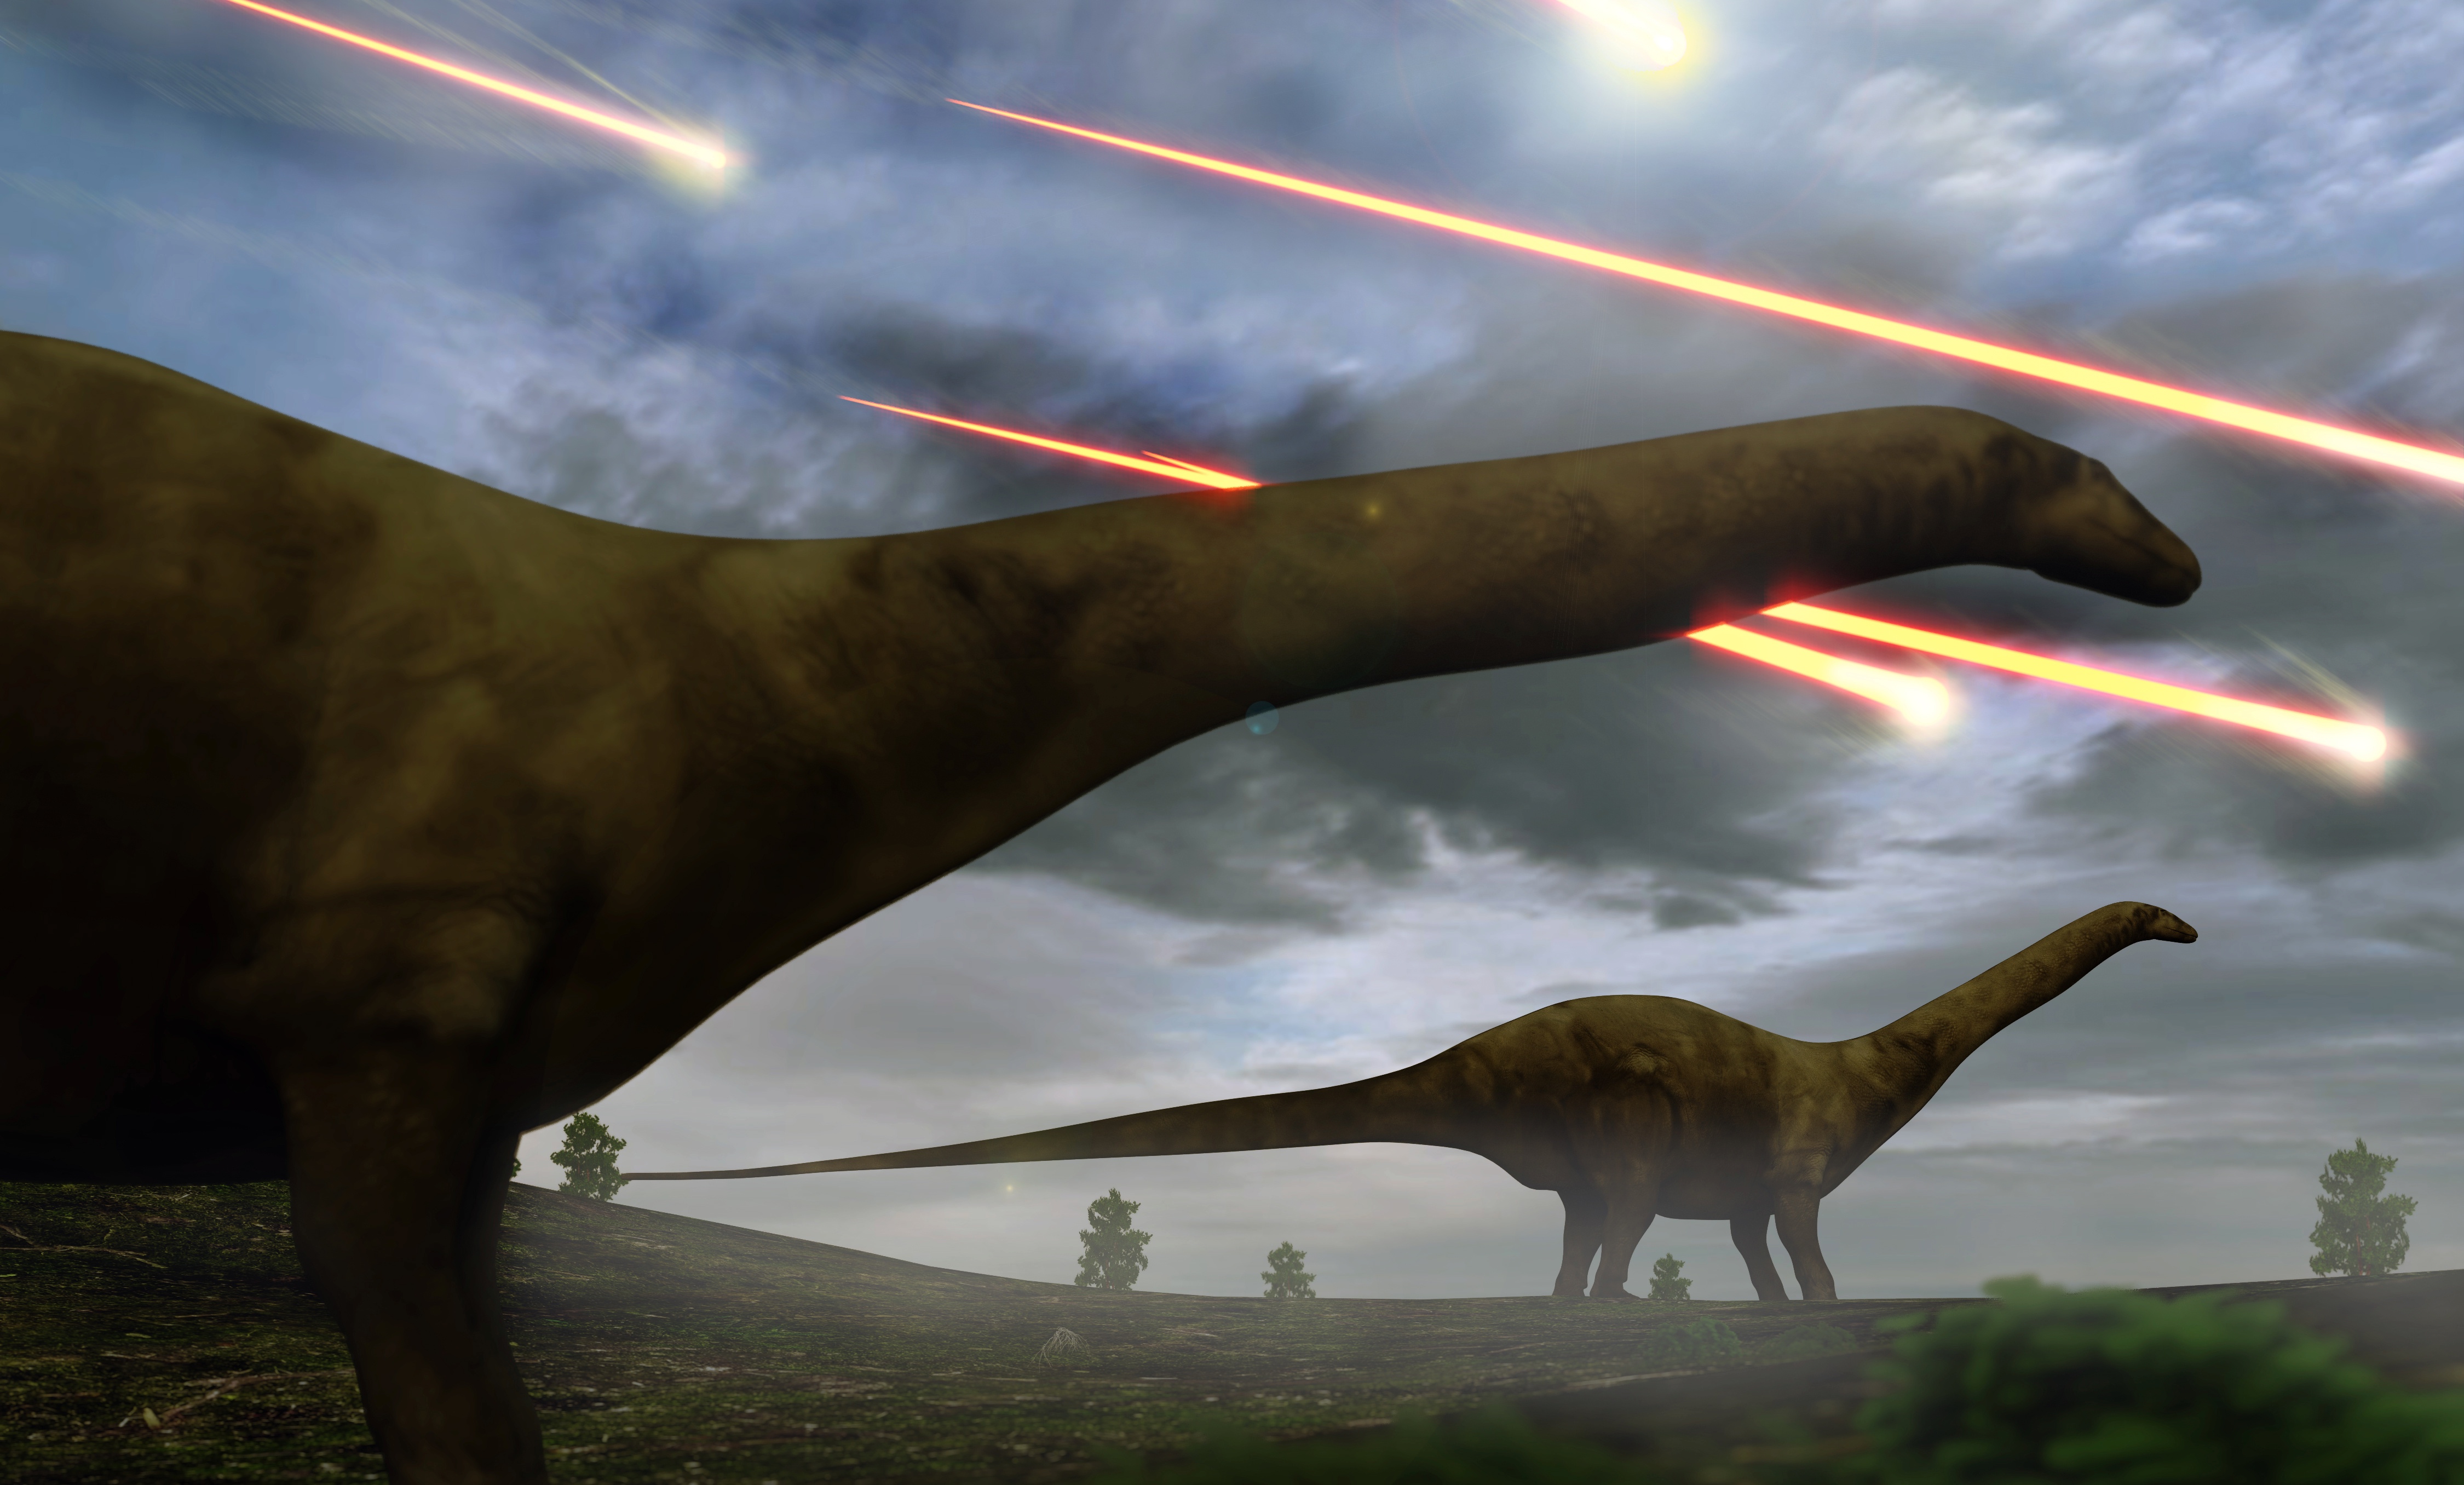 Une vue d'artiste de l'époque des dinosaures. © auntspray, Adobe Stock